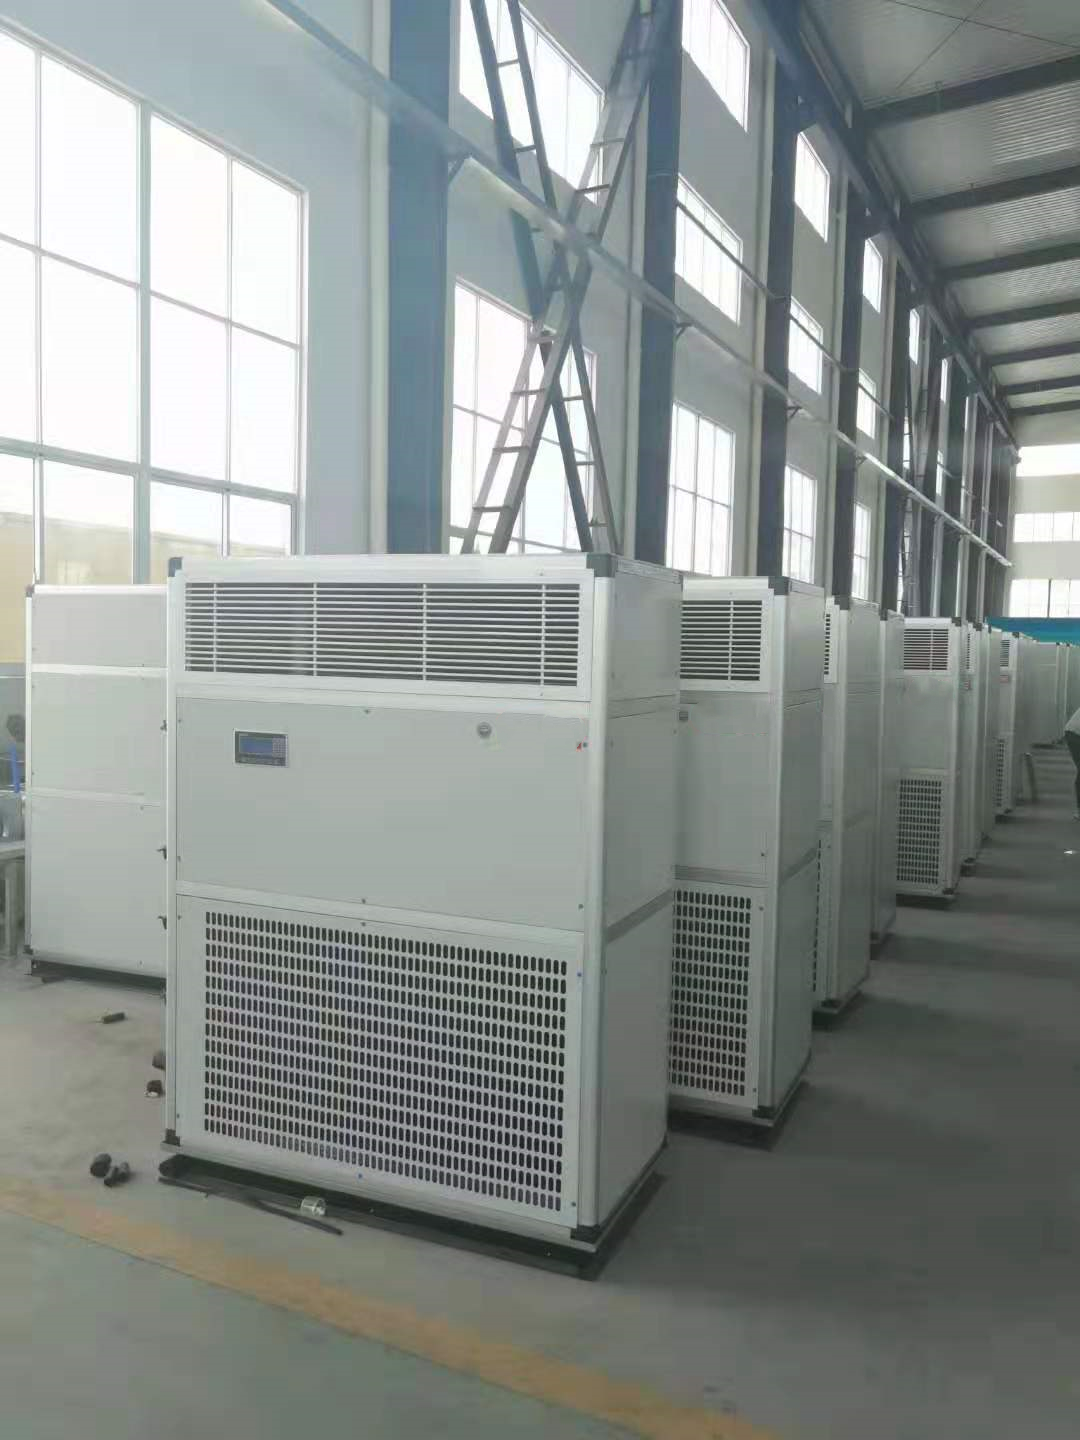 杭井 5P风冷单冷柜机(R410A)，LF14SONP(低温-20℃型,侧出风带风帽)，不含安装及辅材。